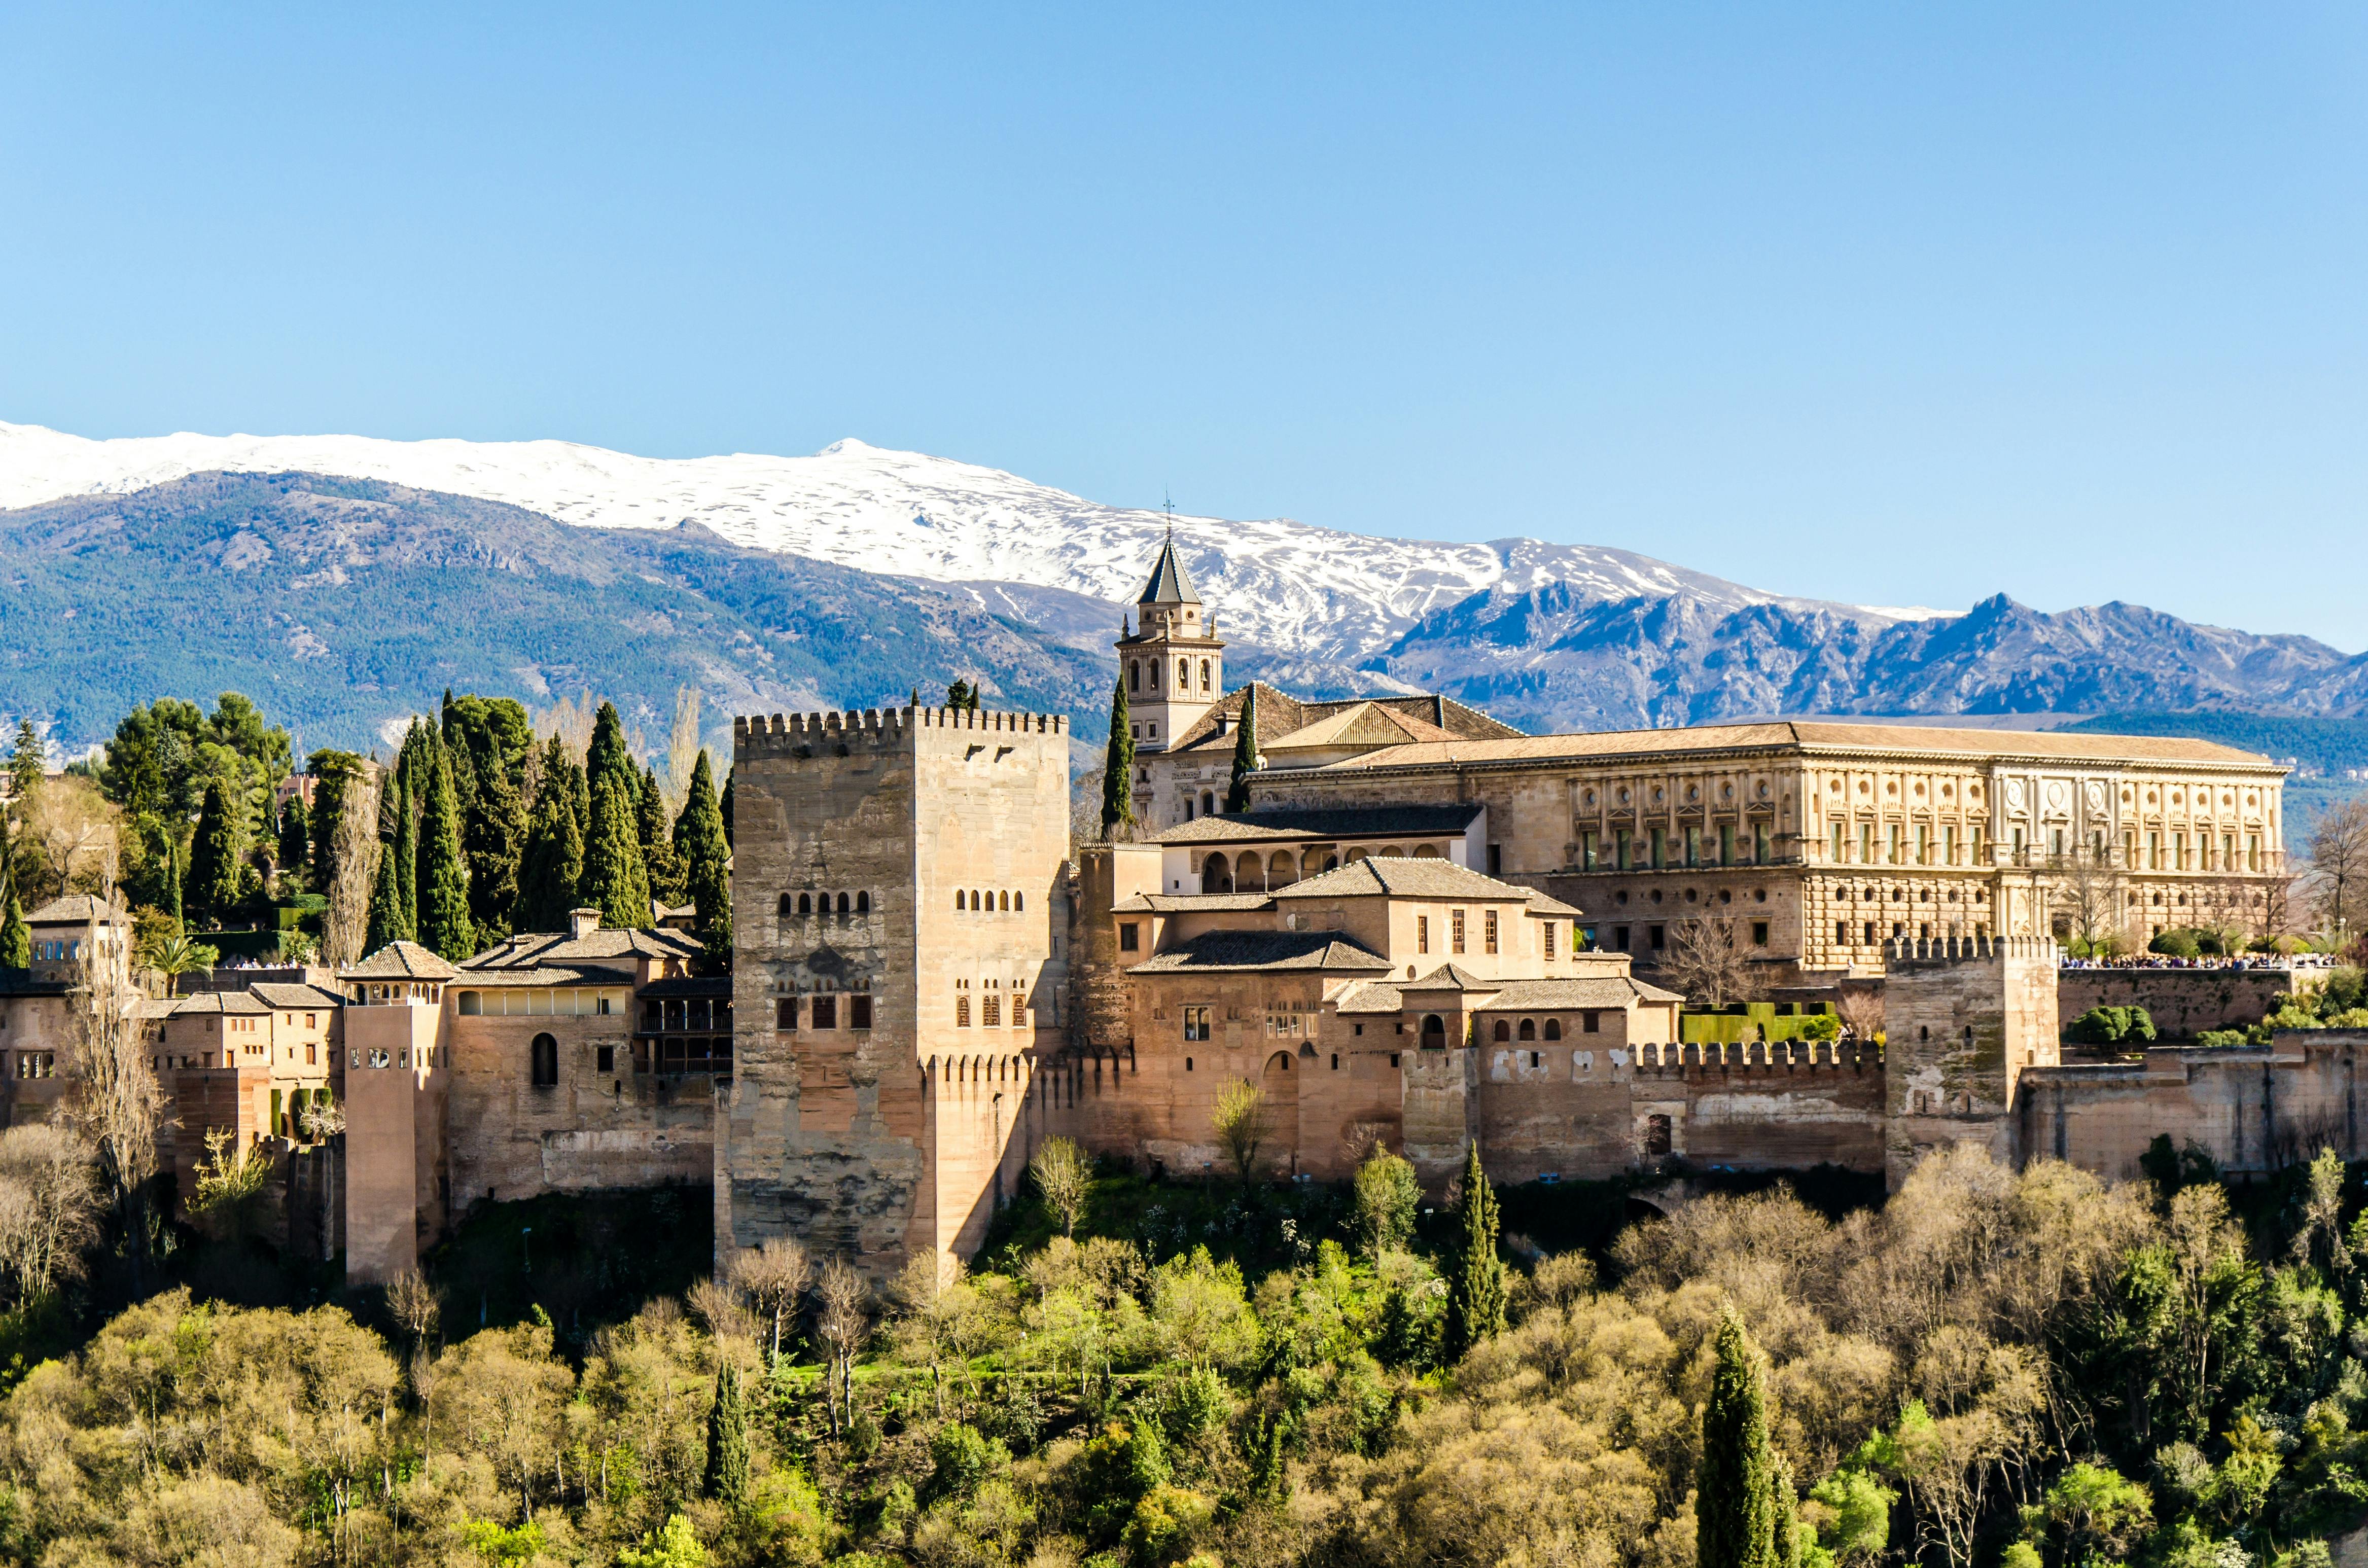 Visita guiada en grupo reducido Albaicín y Sacromonte con entrada a la Alhambra